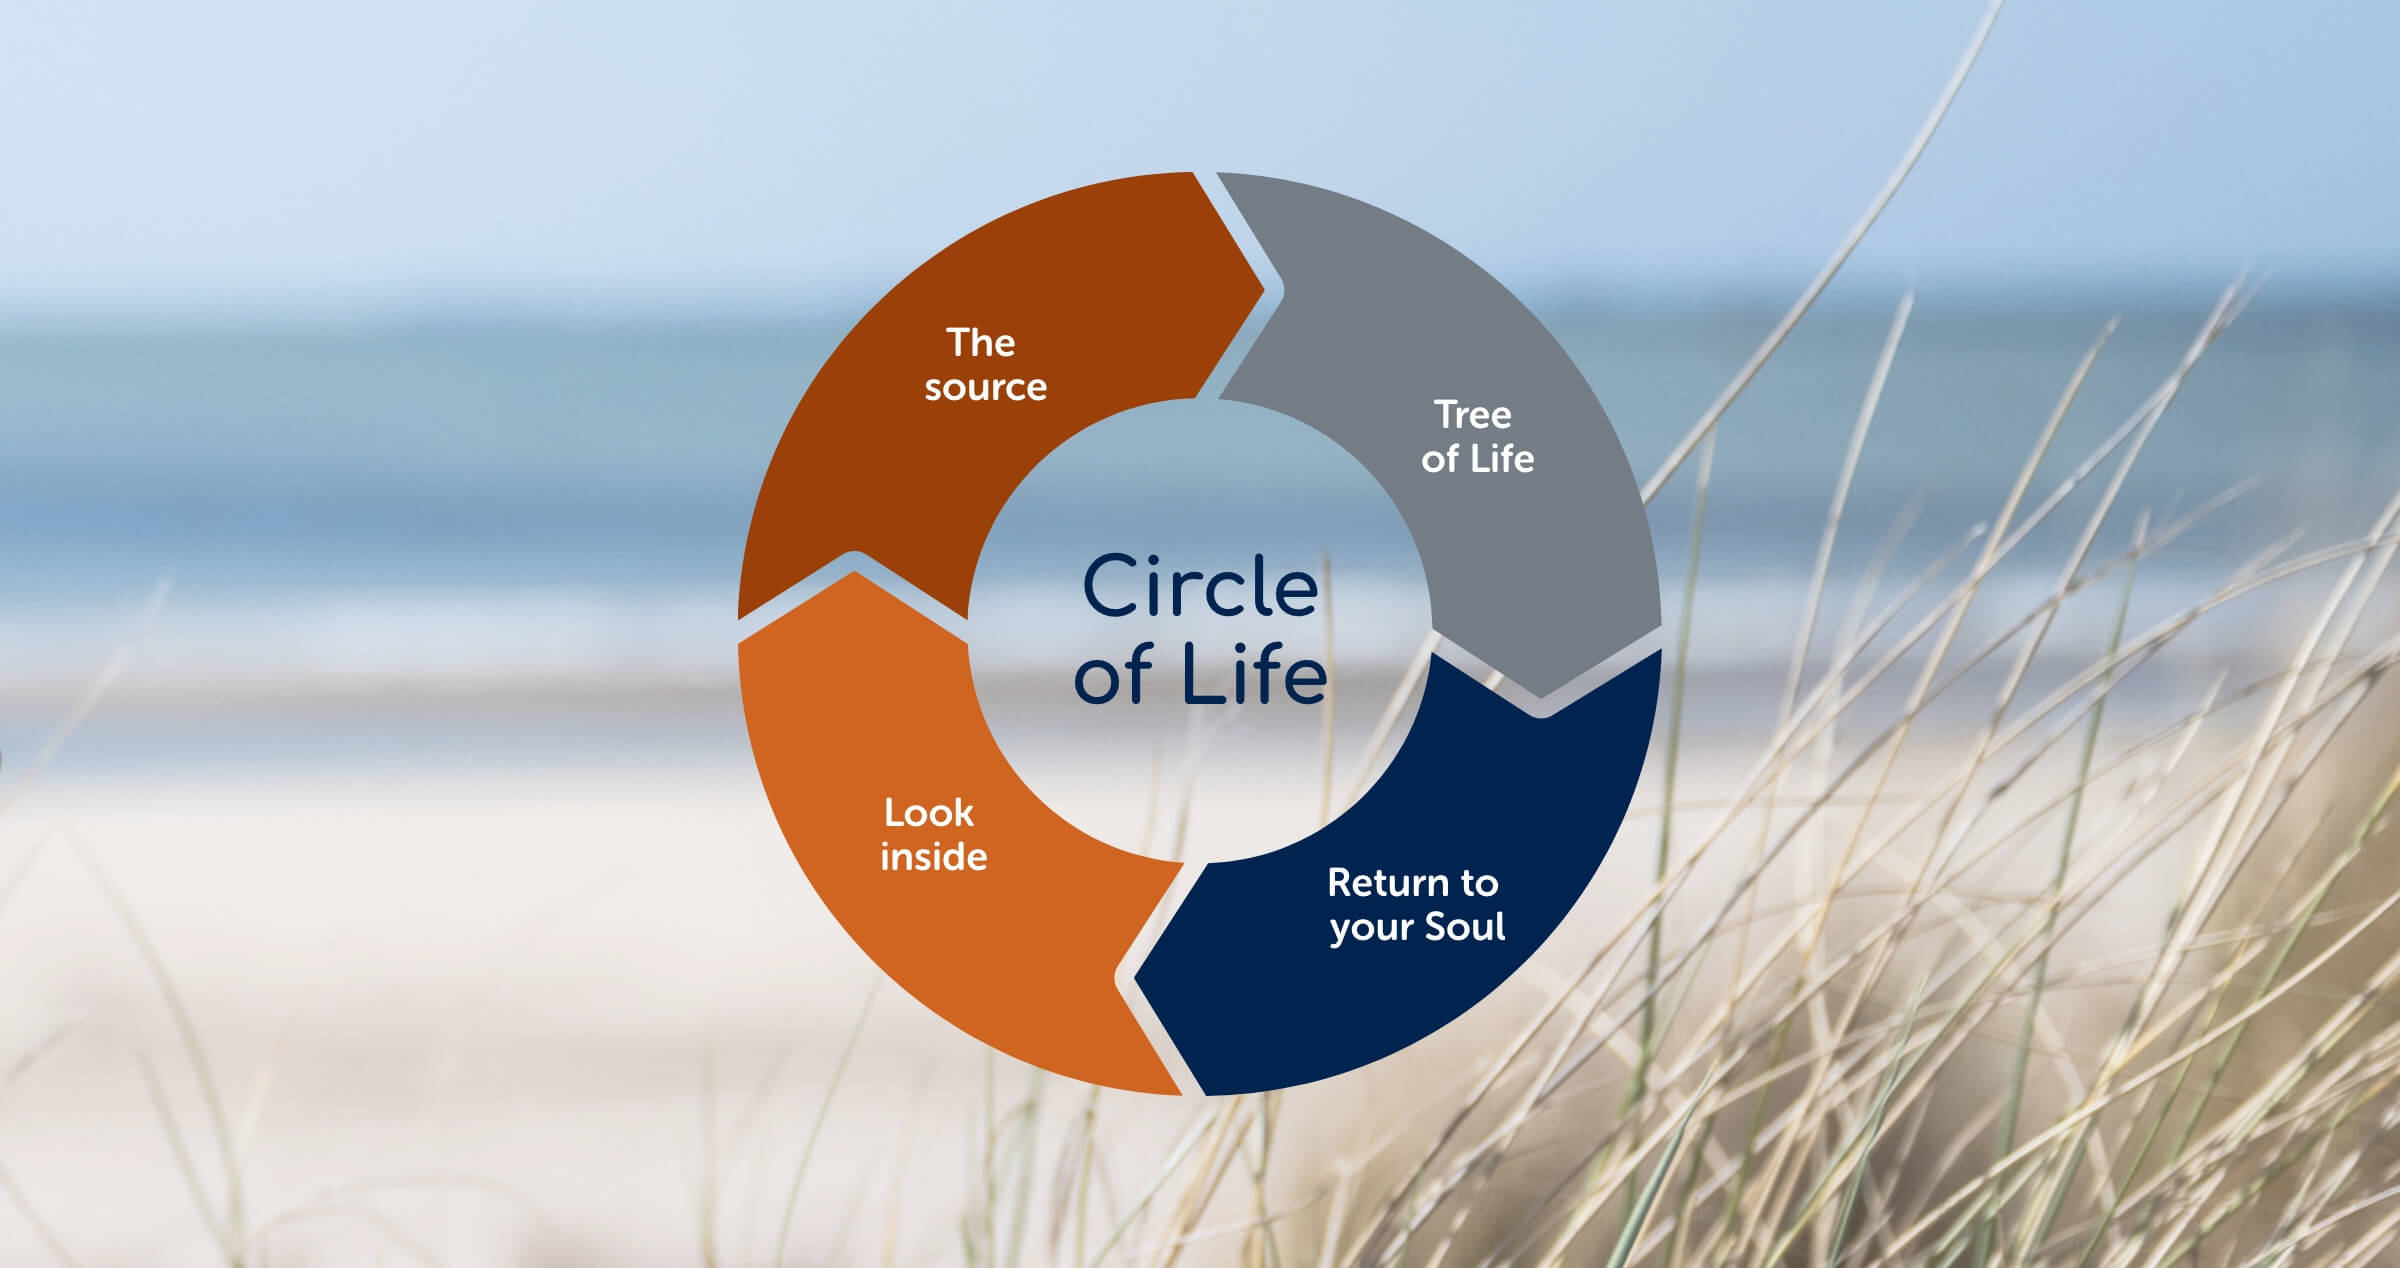 Circle of life